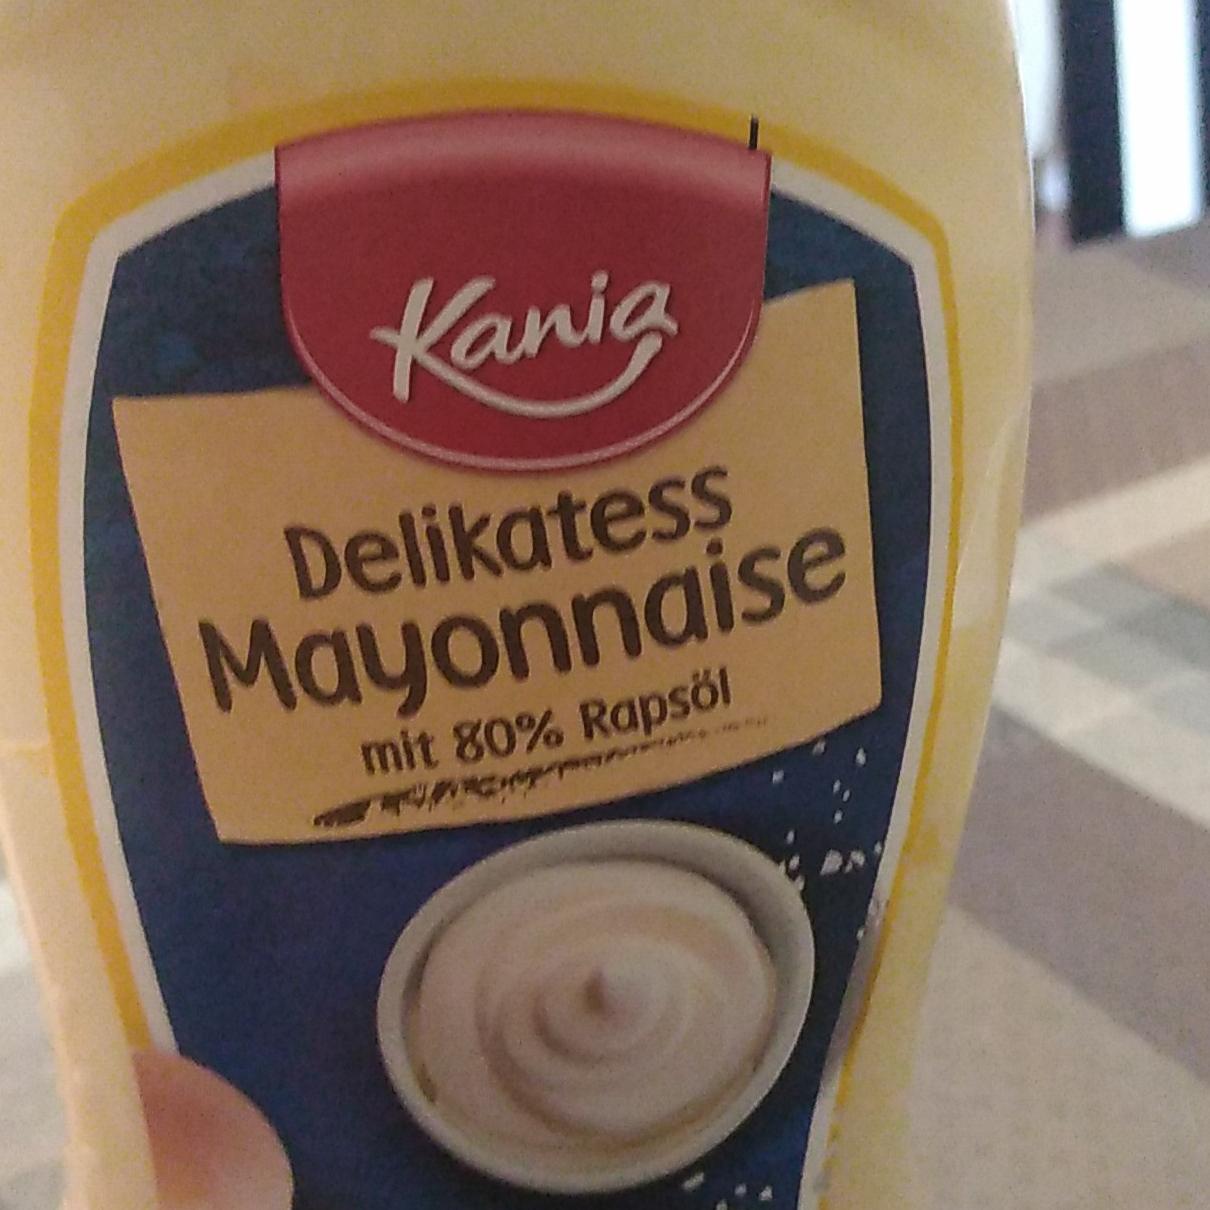 Delikatess mayonaise Kania - kalorie, kJ a nutriční hodnoty